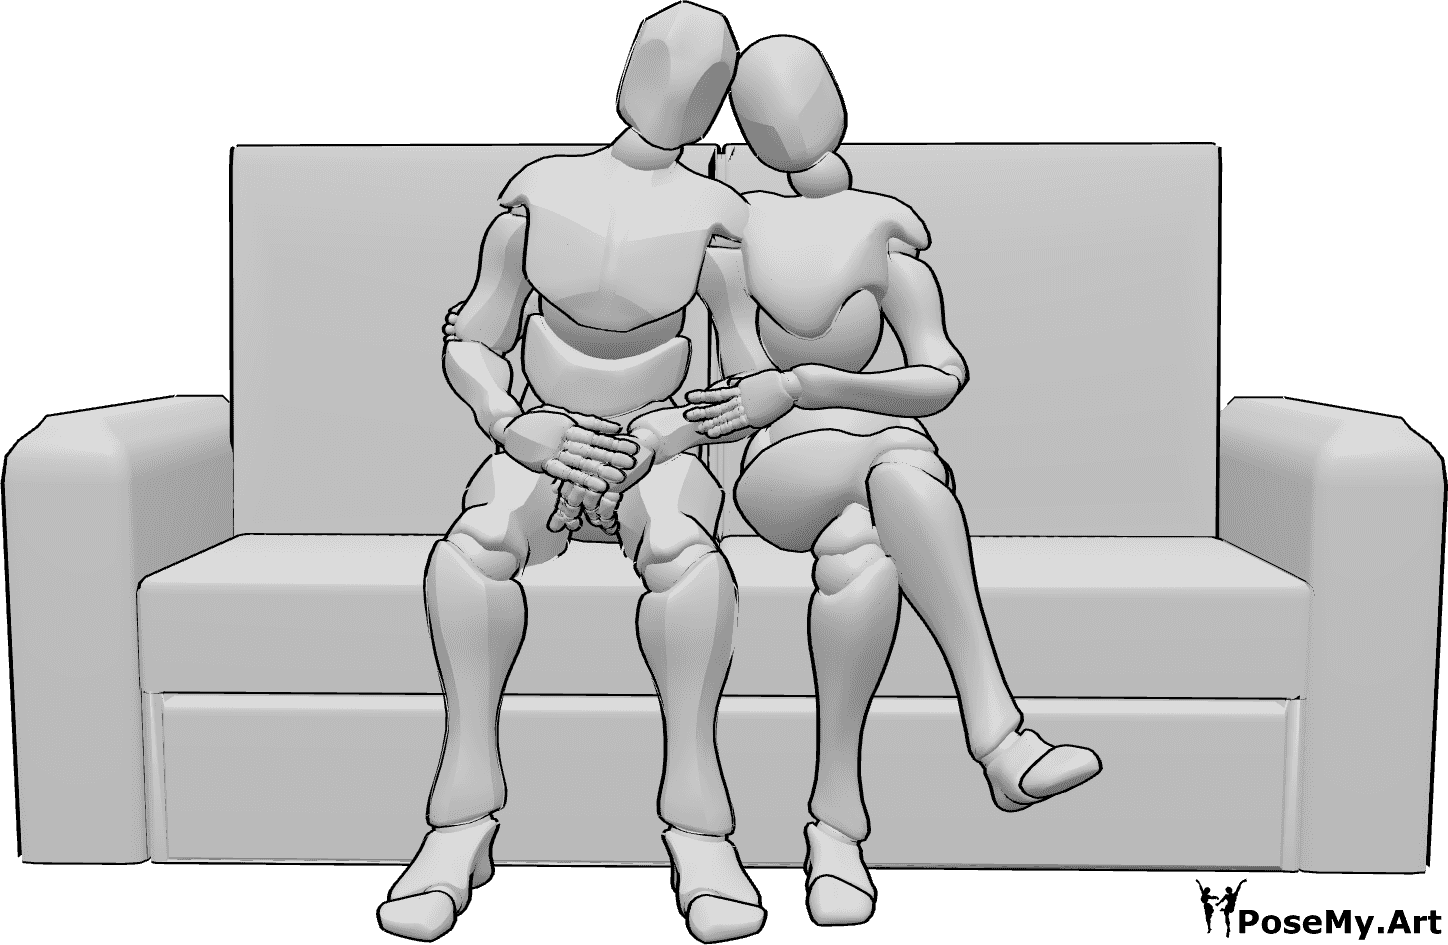 Référence des poses- Couple romantique assis - Couple de femmes et d'hommes assis, pose féminine embrassant la pose masculine